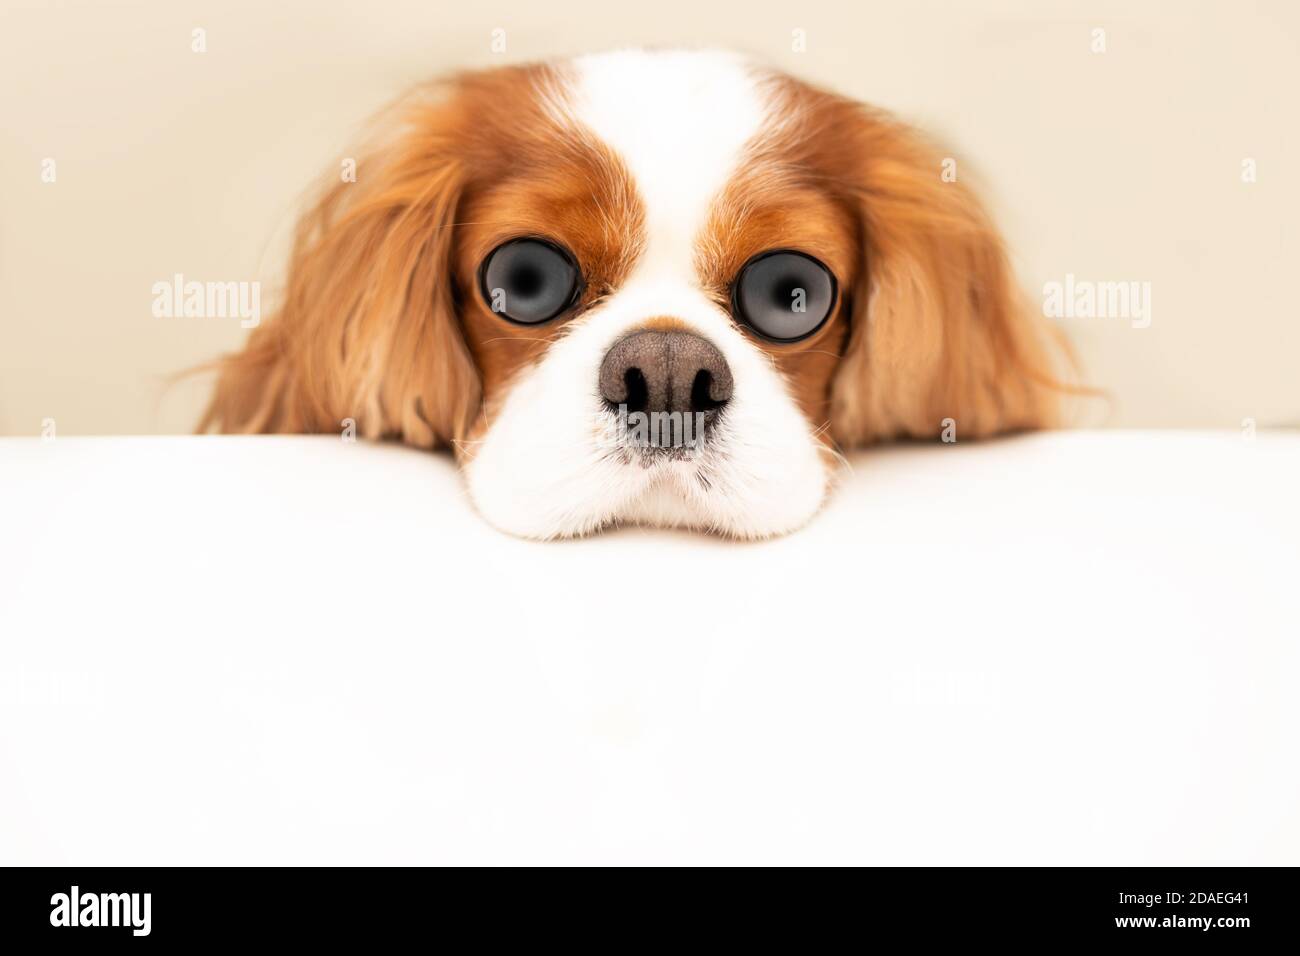 Divertente foto di un cane con gli occhi gonfi e un naso gonfio. Il re Cavalier Charles Spaniel mise la testa sul tavolo. Concetto di umore del cane affamato. Copia Foto Stock